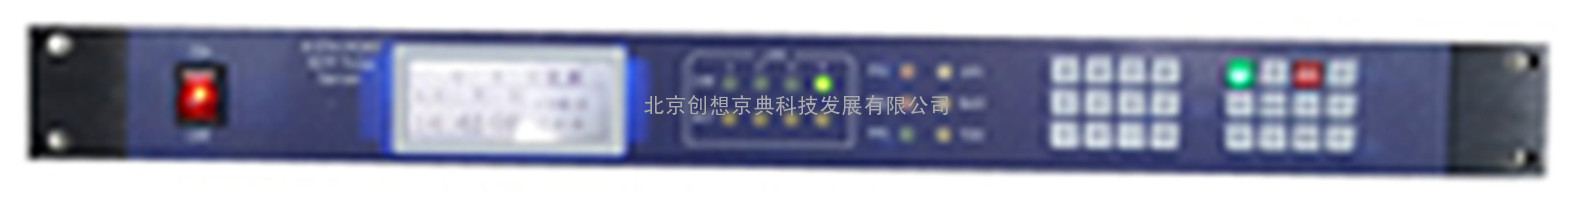 重庆GPS北斗卫星同步网络时钟